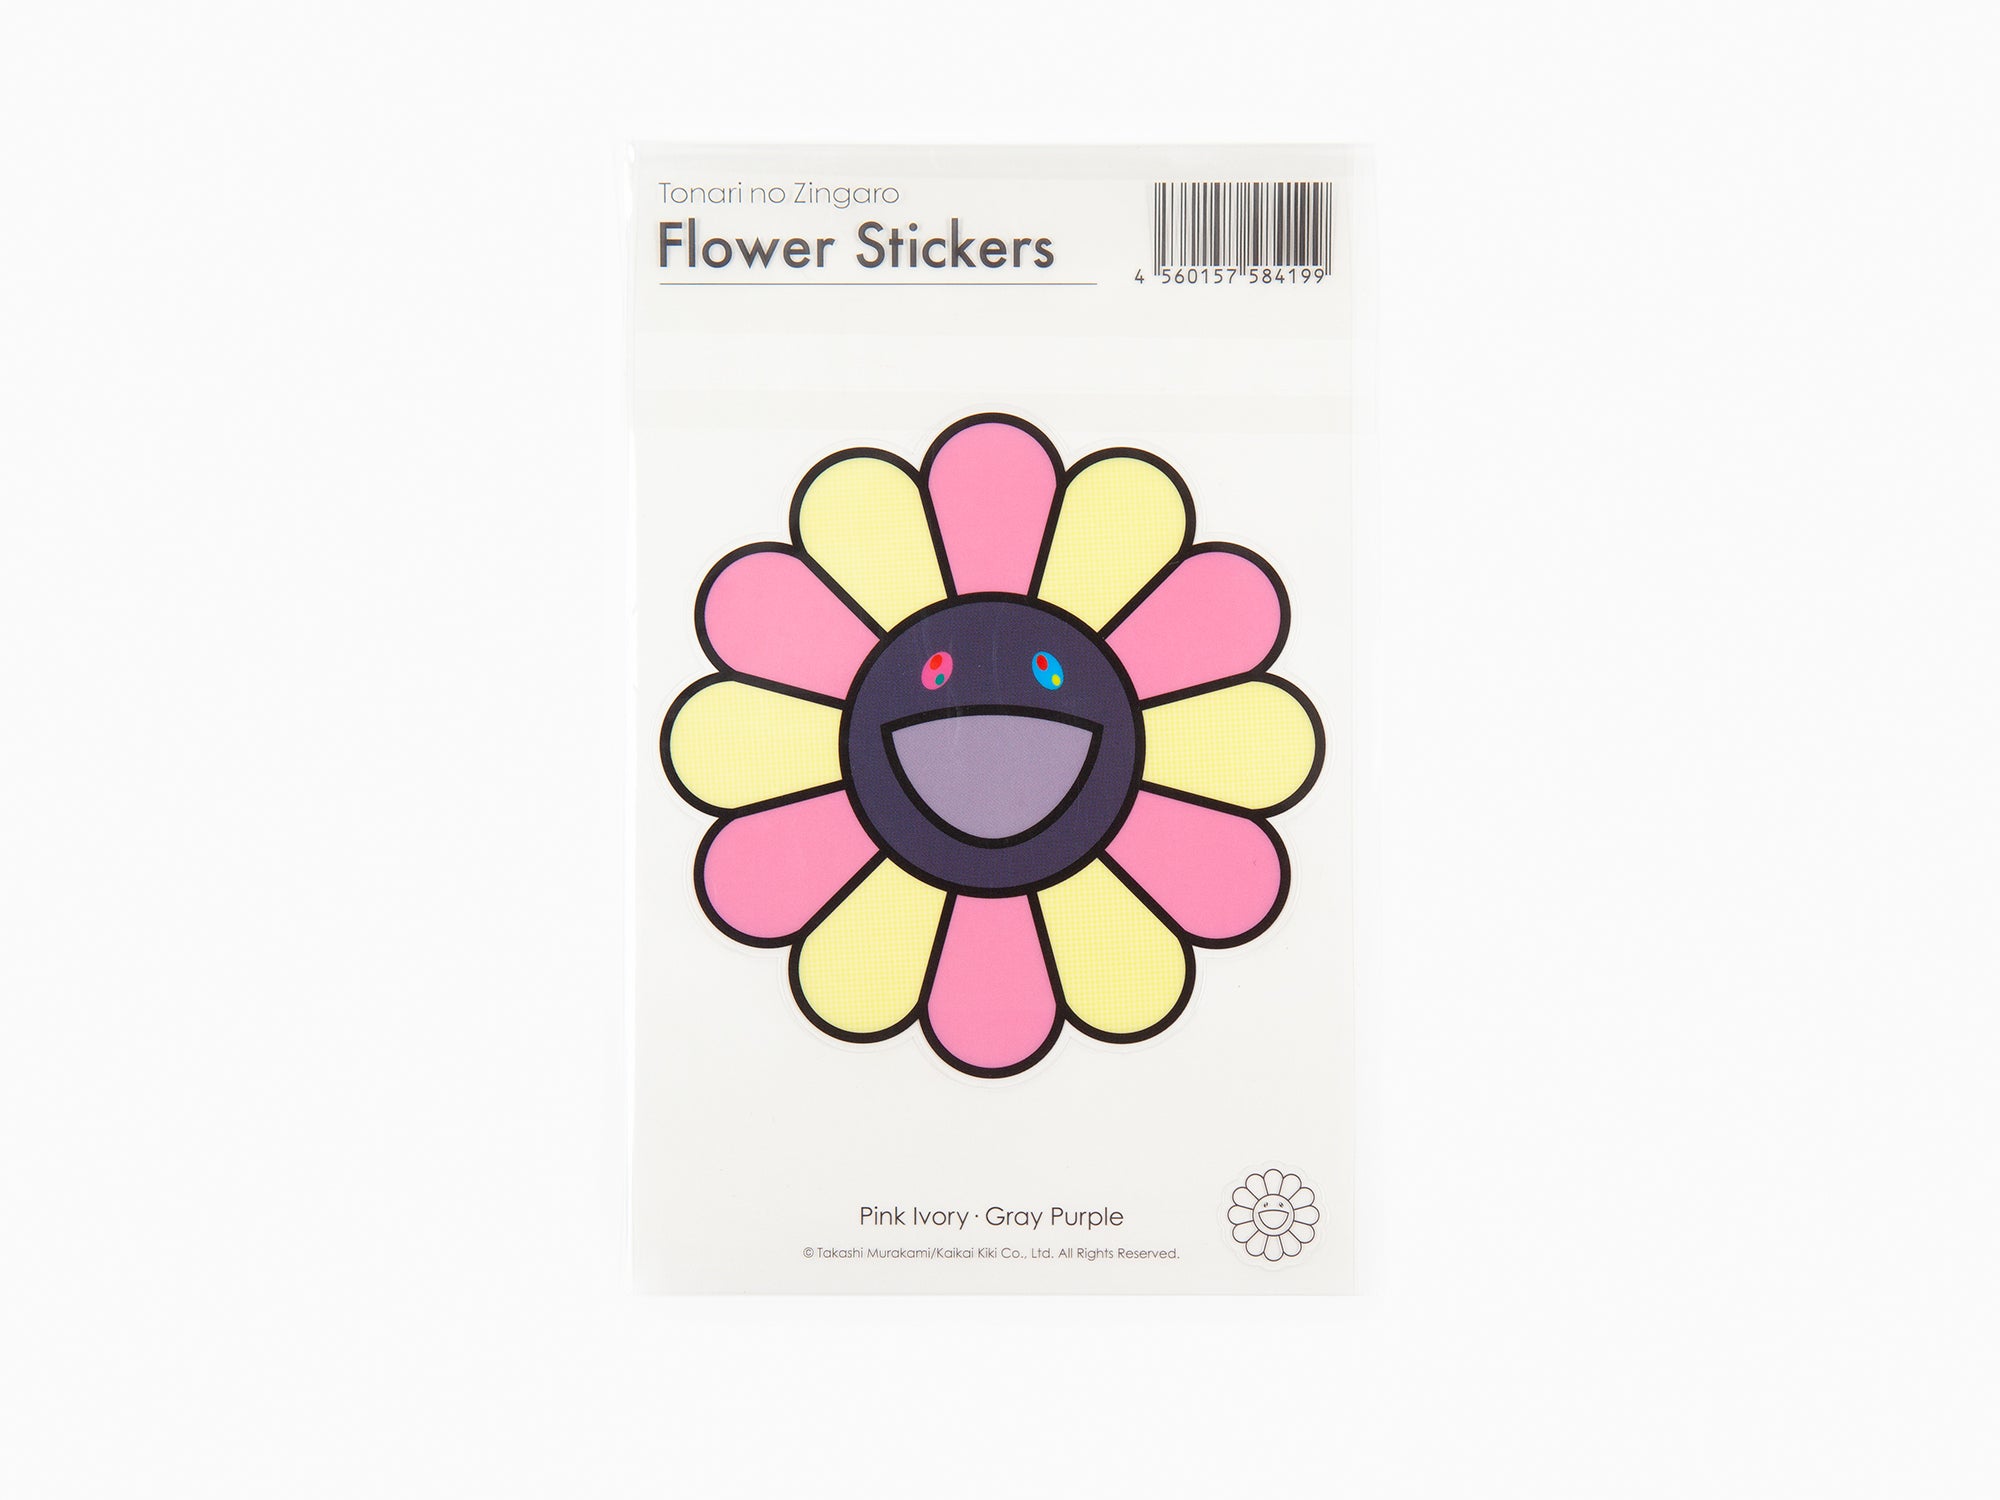 Takashi Murakami - Backpack - Flower – Perrotin New York